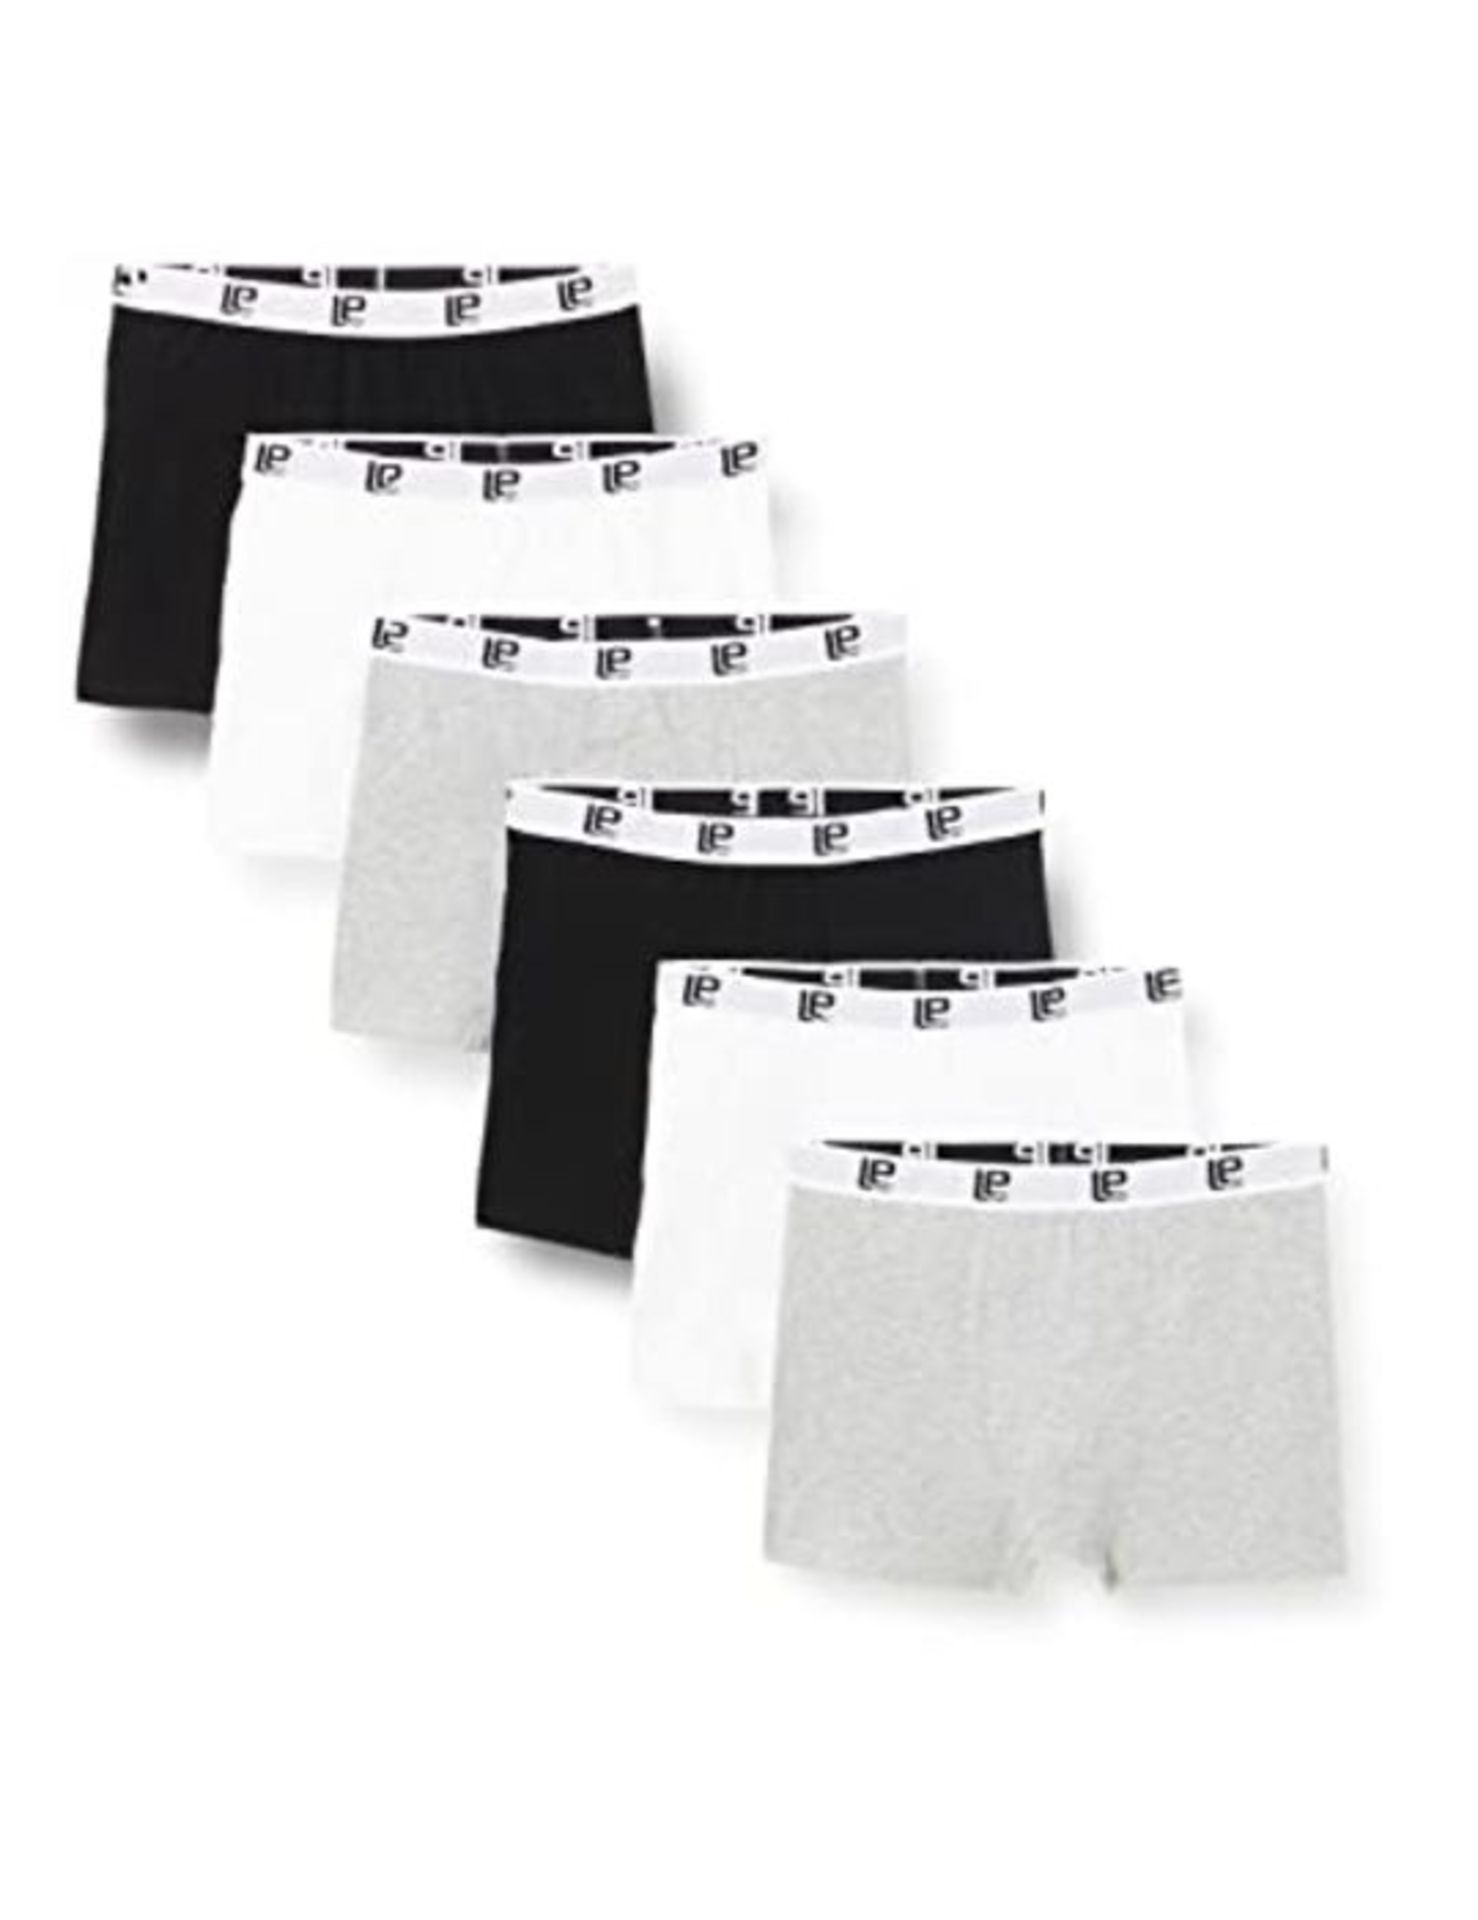 Lower East Men's Retro Boxer Shorts, Black/White/Light Grey (Pack of 6), 3XL